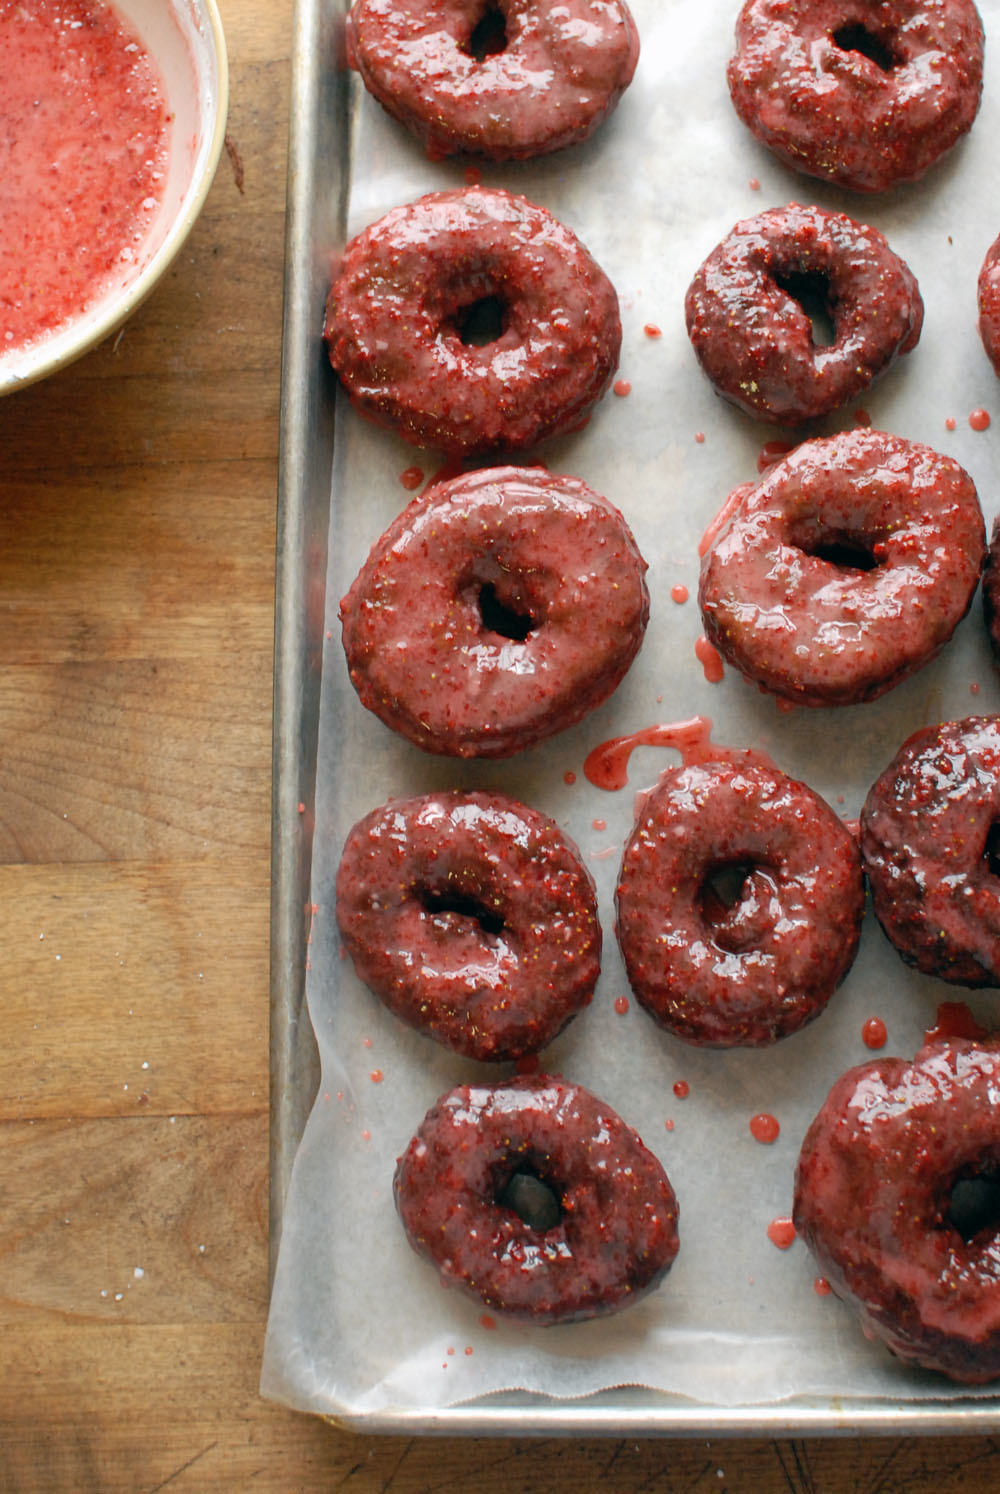 Chocolate Donuts with Strawberry Glaze